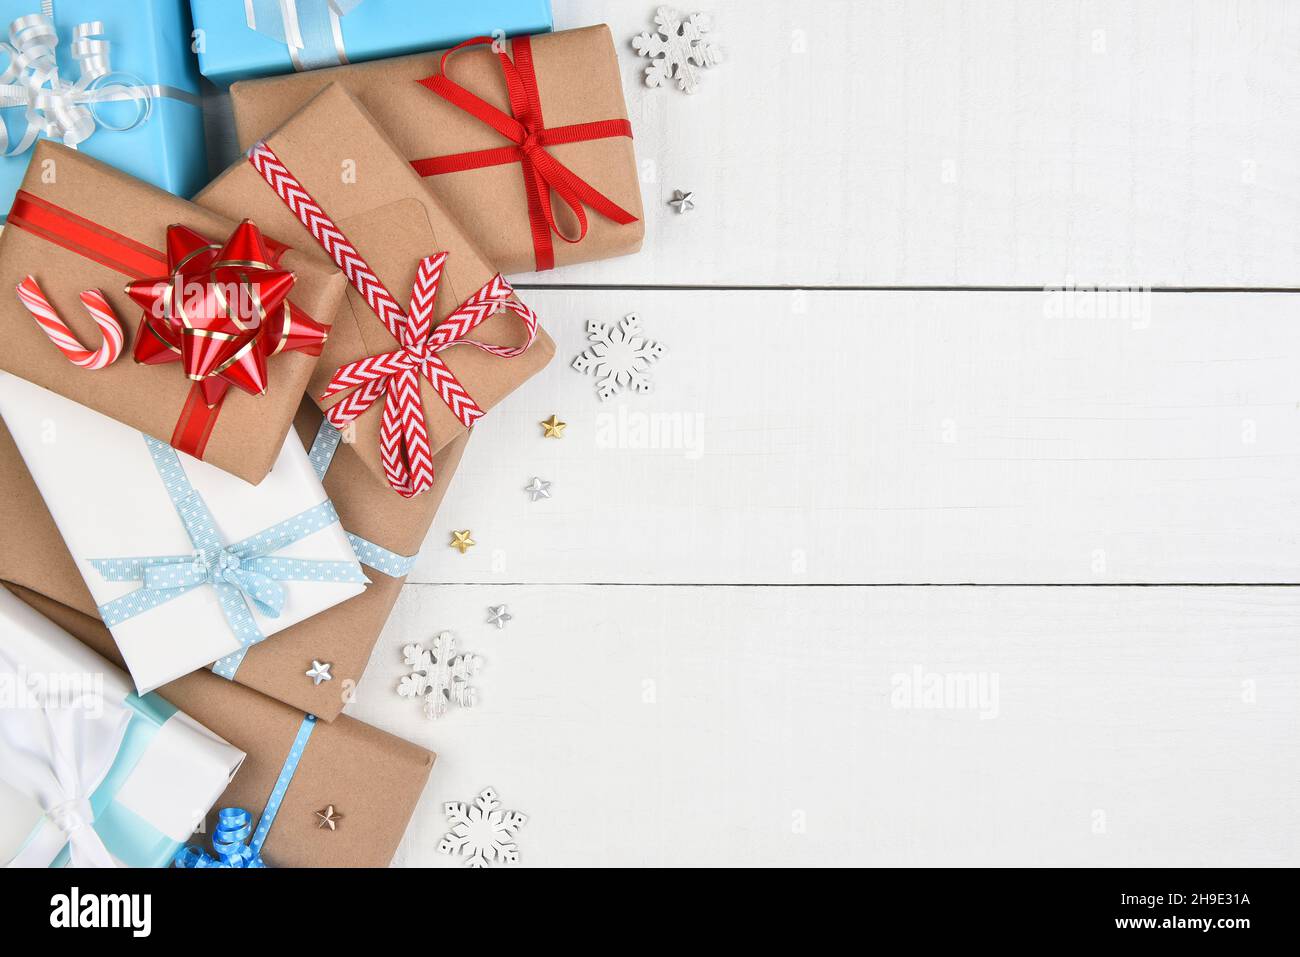 Plat de Noël.Pile de cadeaux enveloppés sur le côté gauche du cadre sur les panneaux peints en blanc. Banque D'Images